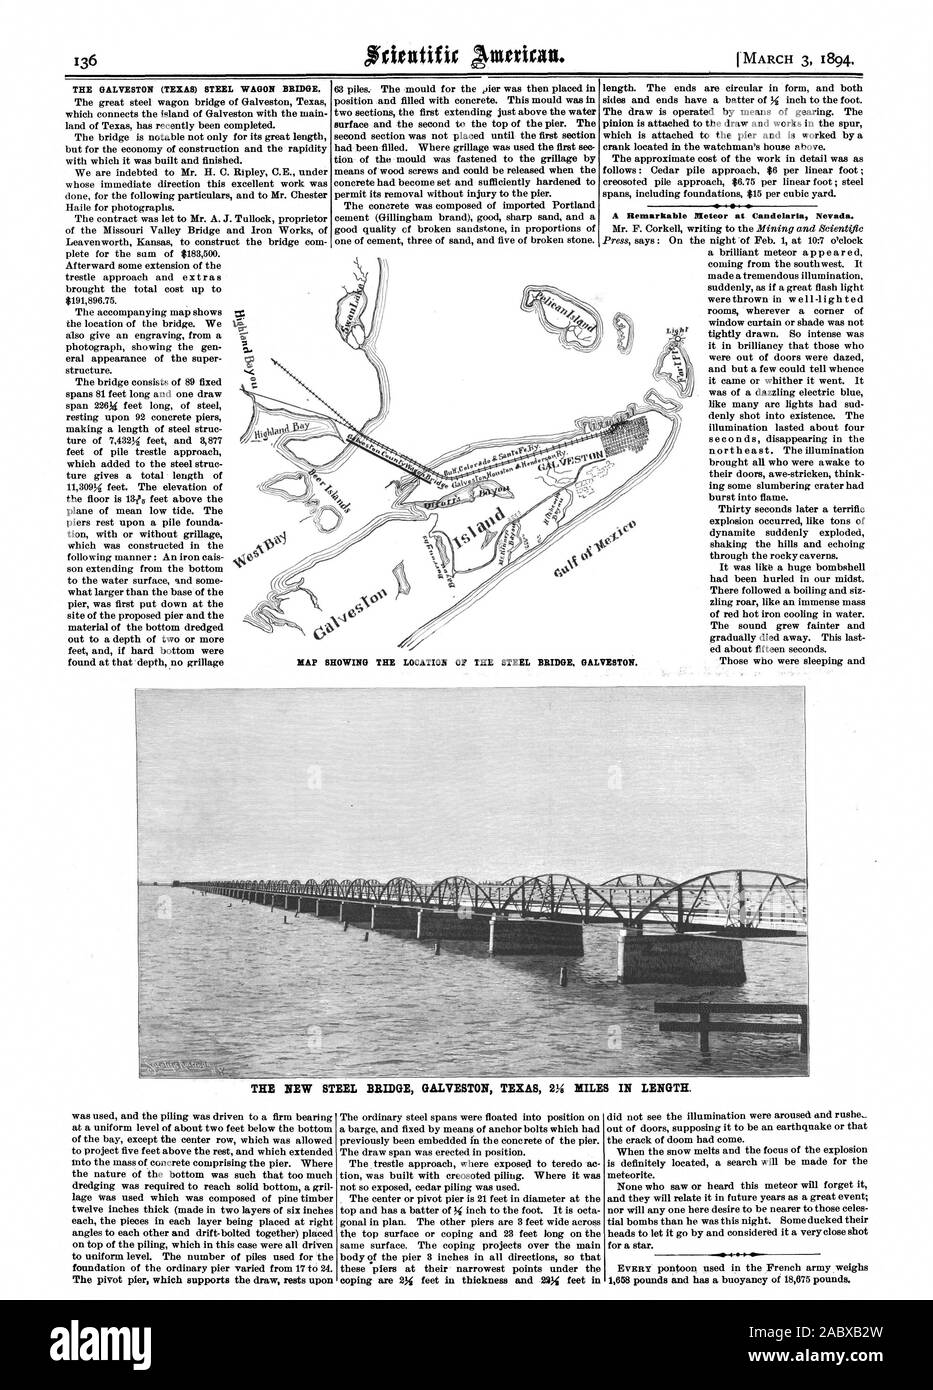 Die Galveston (Texas) STAHL WAGEN BRÜCKE. Eine bemerkenswerte Meteor bei Candelaria Nevada. Karte MIT DER LAGE DER STAHLBRÜCKE. GALVESTON. Die neue STAHLBRÜCKE GALVESTON TEXAS VI Meilen in der Länge. Ich, Scientific American, 1894-03-03 Stockfoto